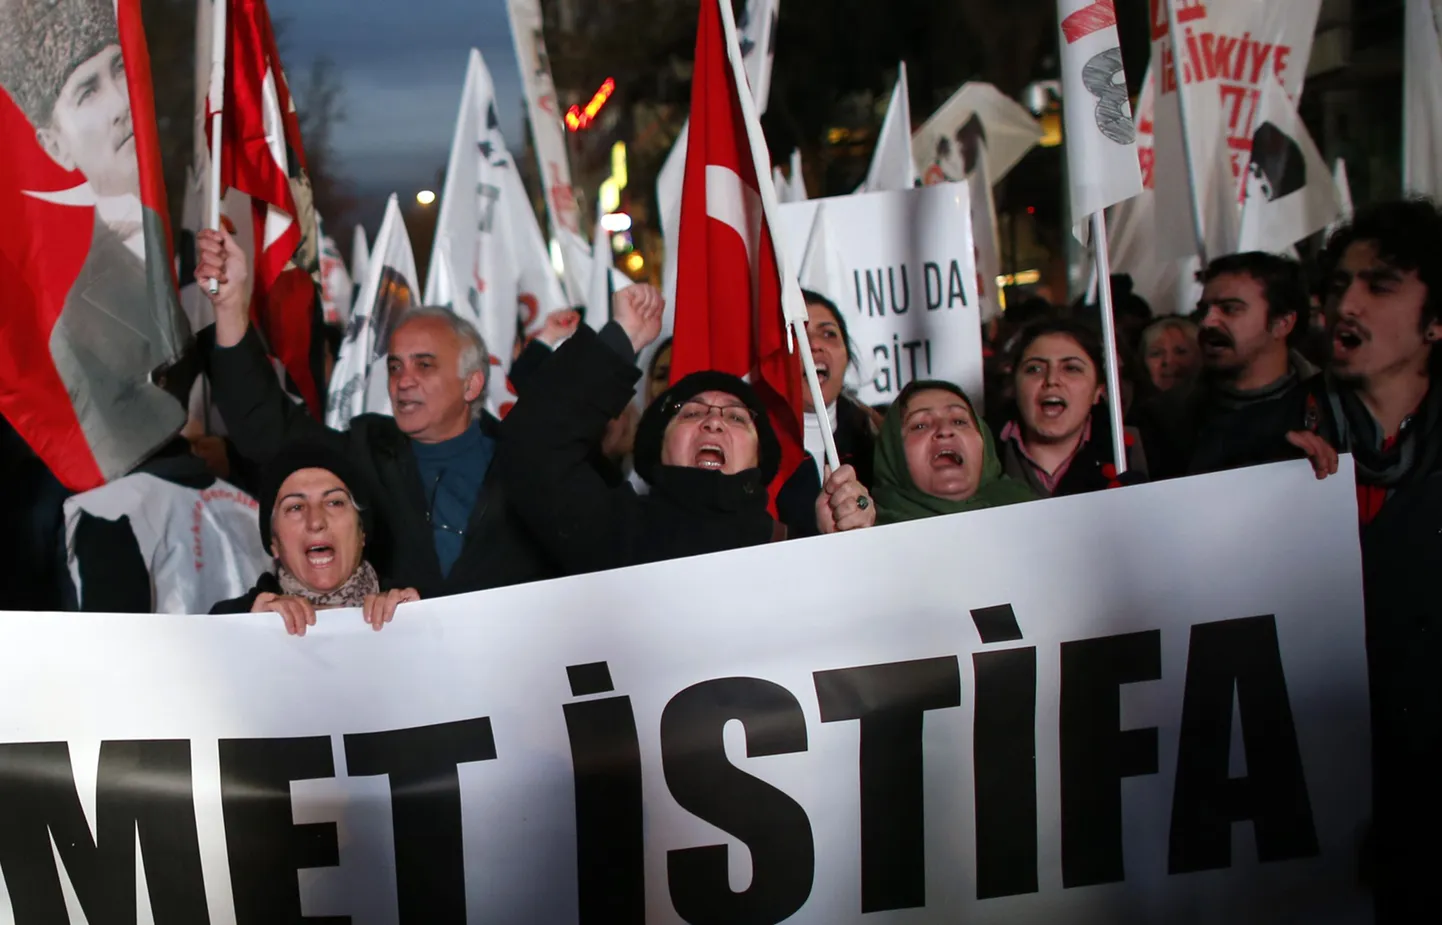 Ankaras nõudsid meeleavaldajad täna peaministri Recep Tayyip Erdoğani tagasiastumist.